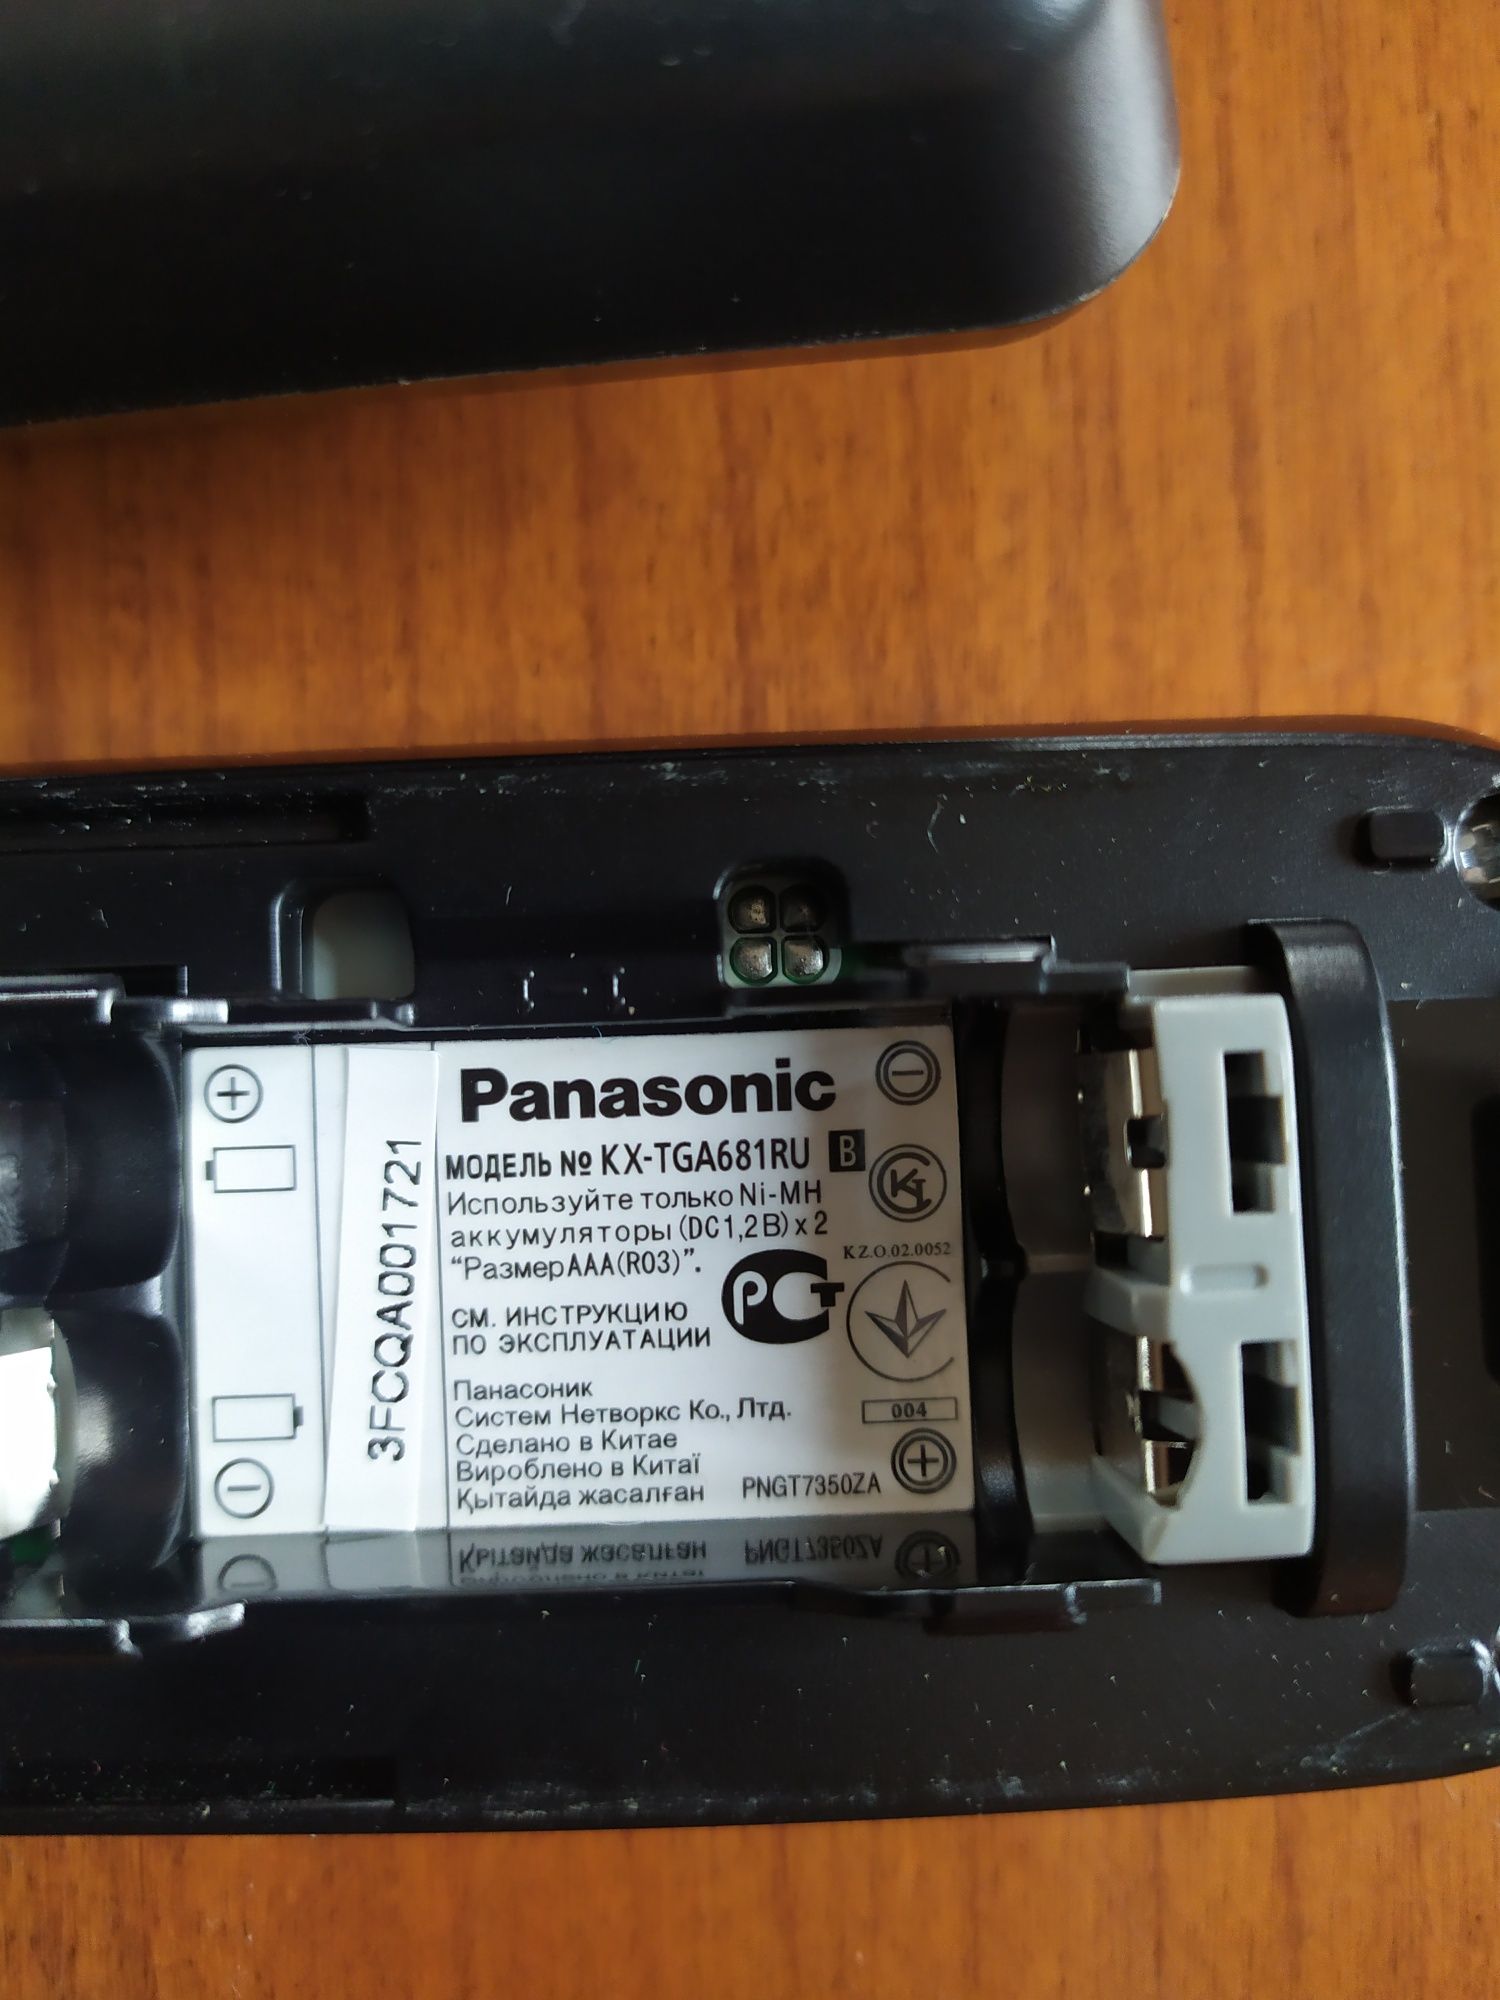 Стационарный телефон фирмы Panasonic.